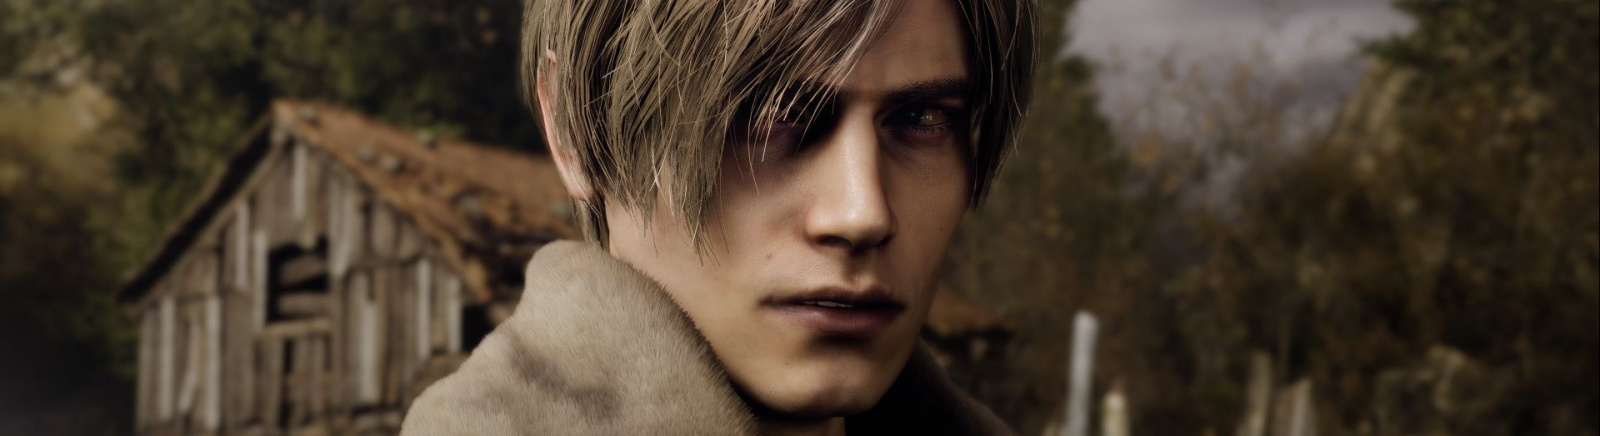 Resident Evil 4 Remake - что это за игра, когда выйдет, трейлеры и видео, системные требования, изображения, цена, похожие игры 